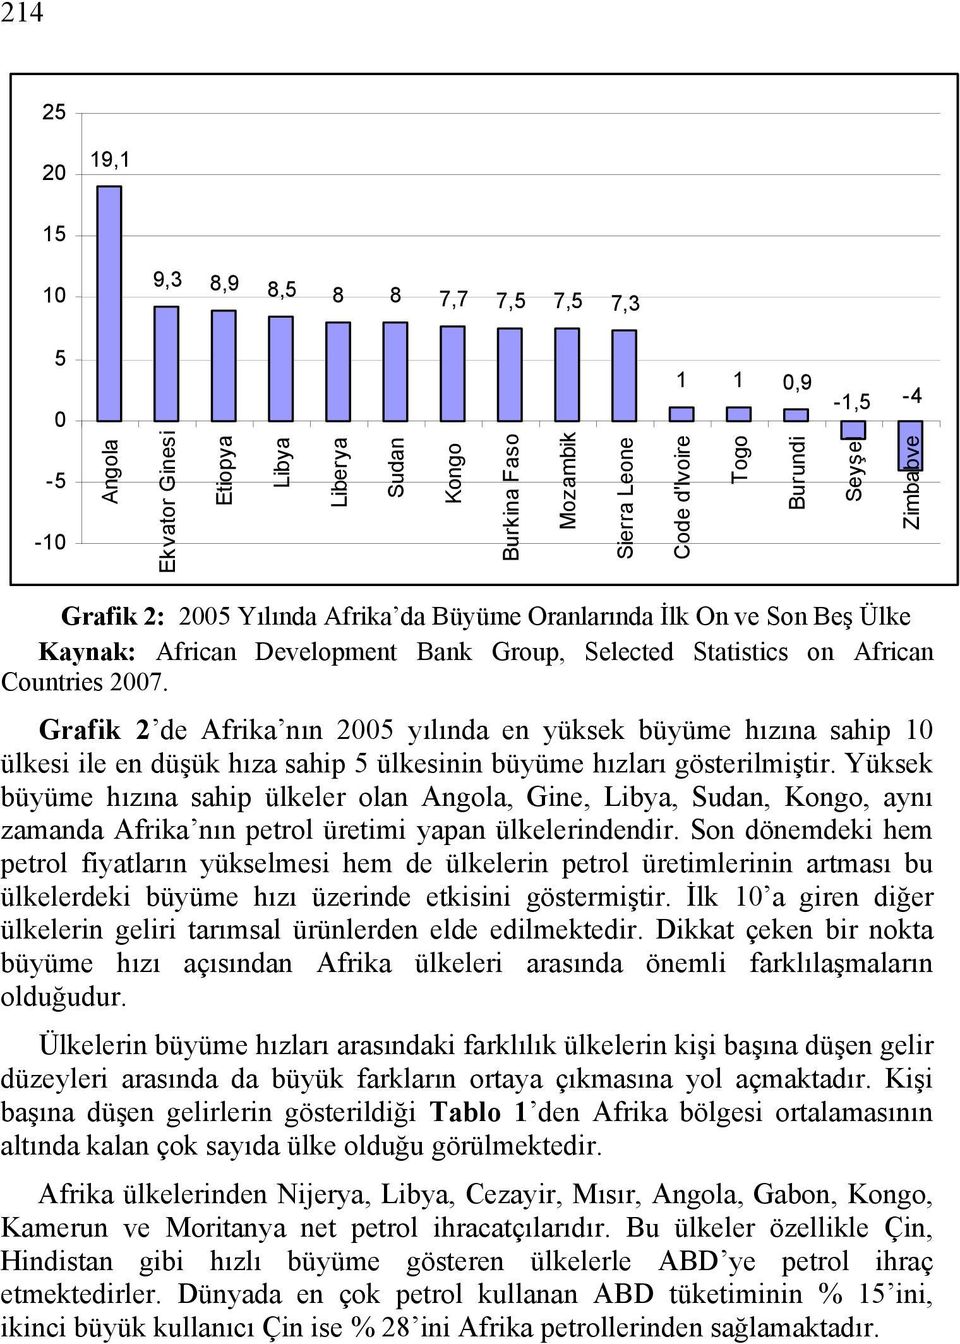 Grafik 2 de Afrika nın 2005 yılında en yüksek büyüme hızına sahip 10 ülkesi ile en düşük hıza sahip 5 ülkesinin büyüme hızları gösterilmiştir.